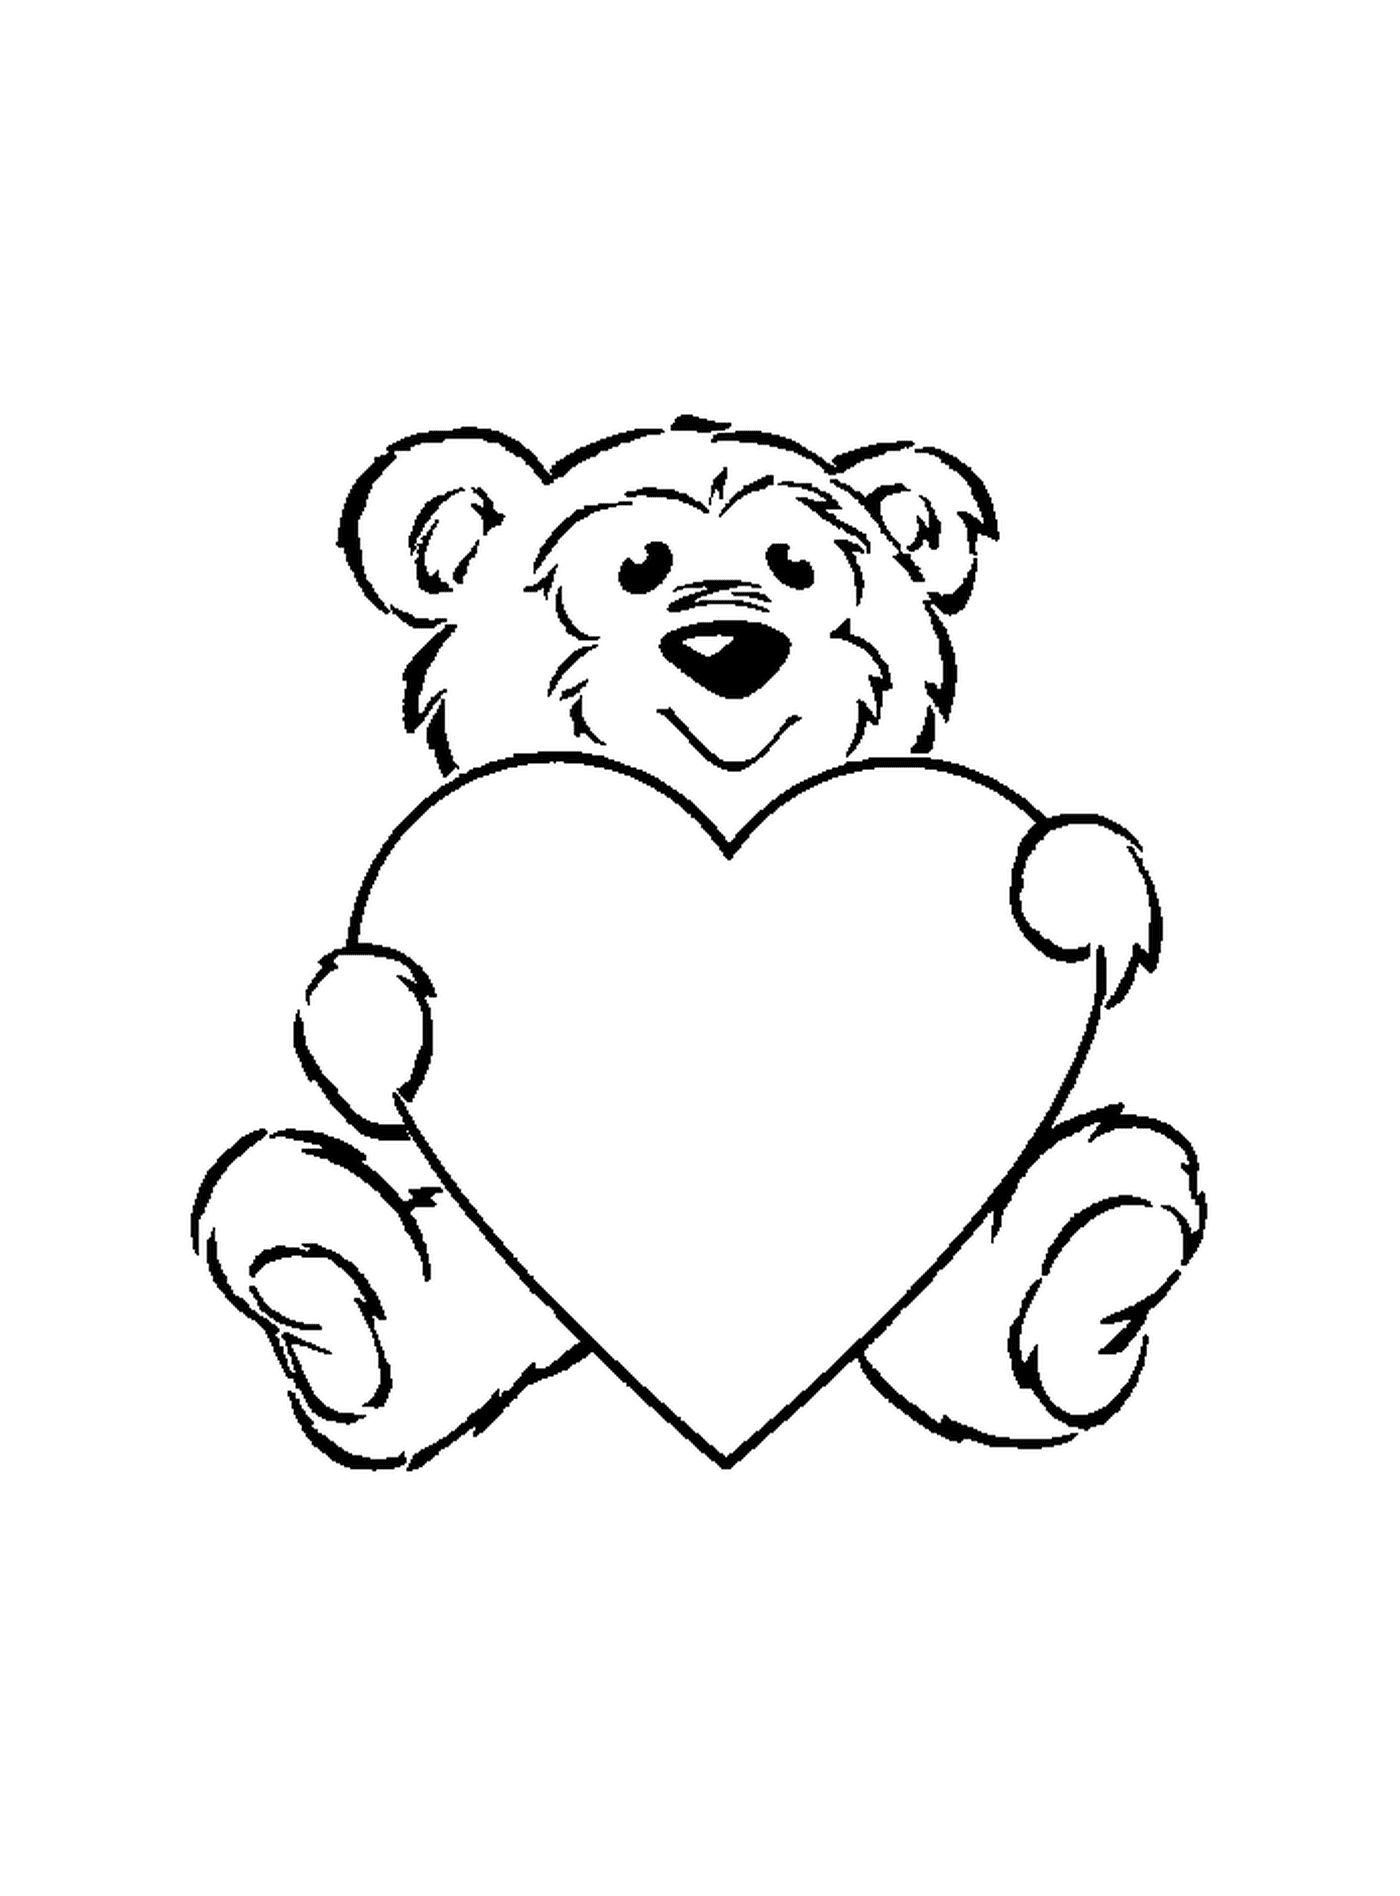  Sweet bear holding a heart 